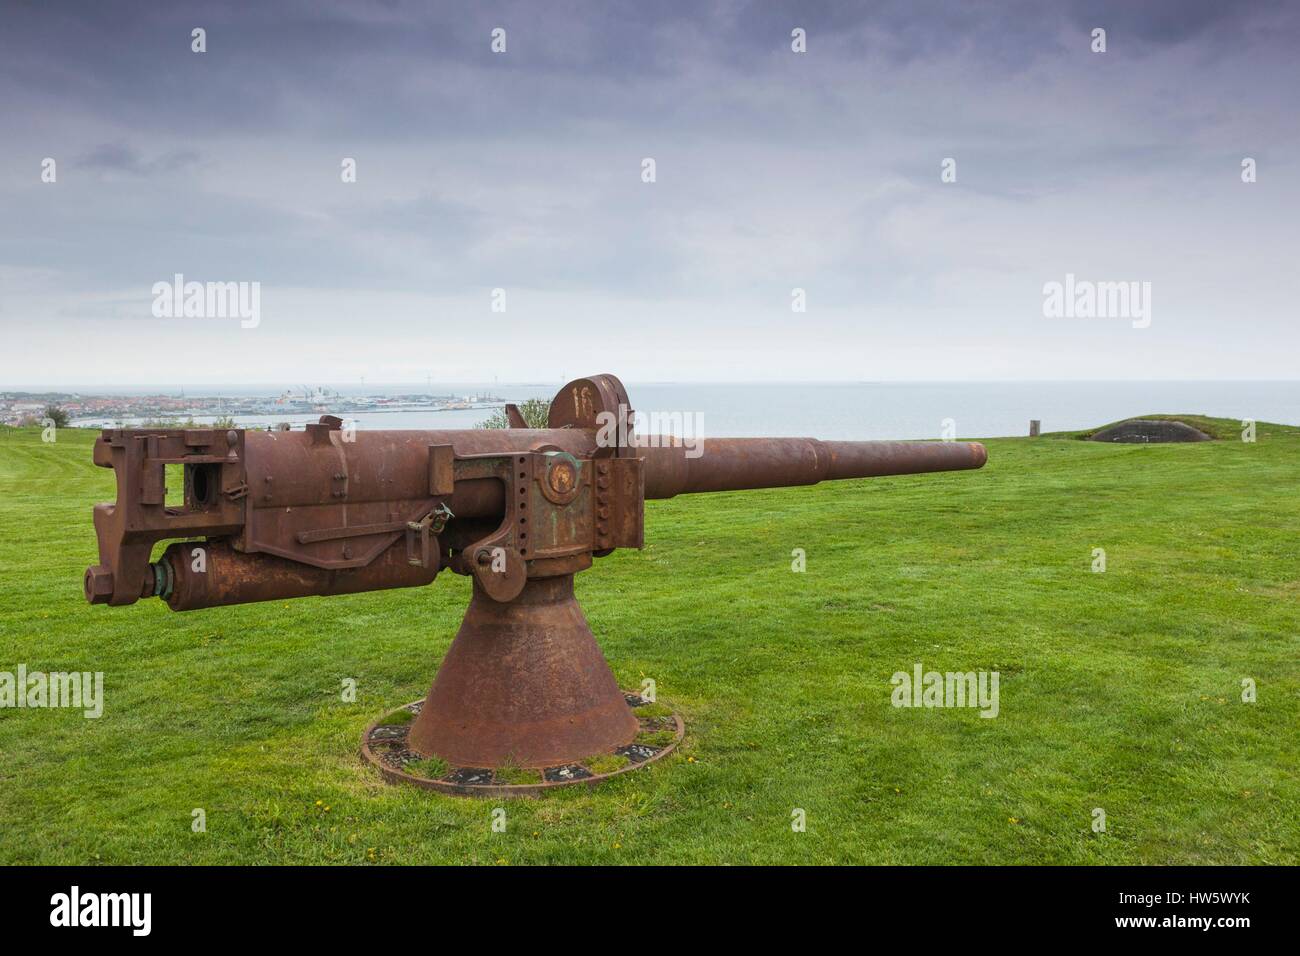 Le Danemark, Jutland, Frederikshavn, Bangsbo Fort, petit canon d'artillerie côtière Banque D'Images